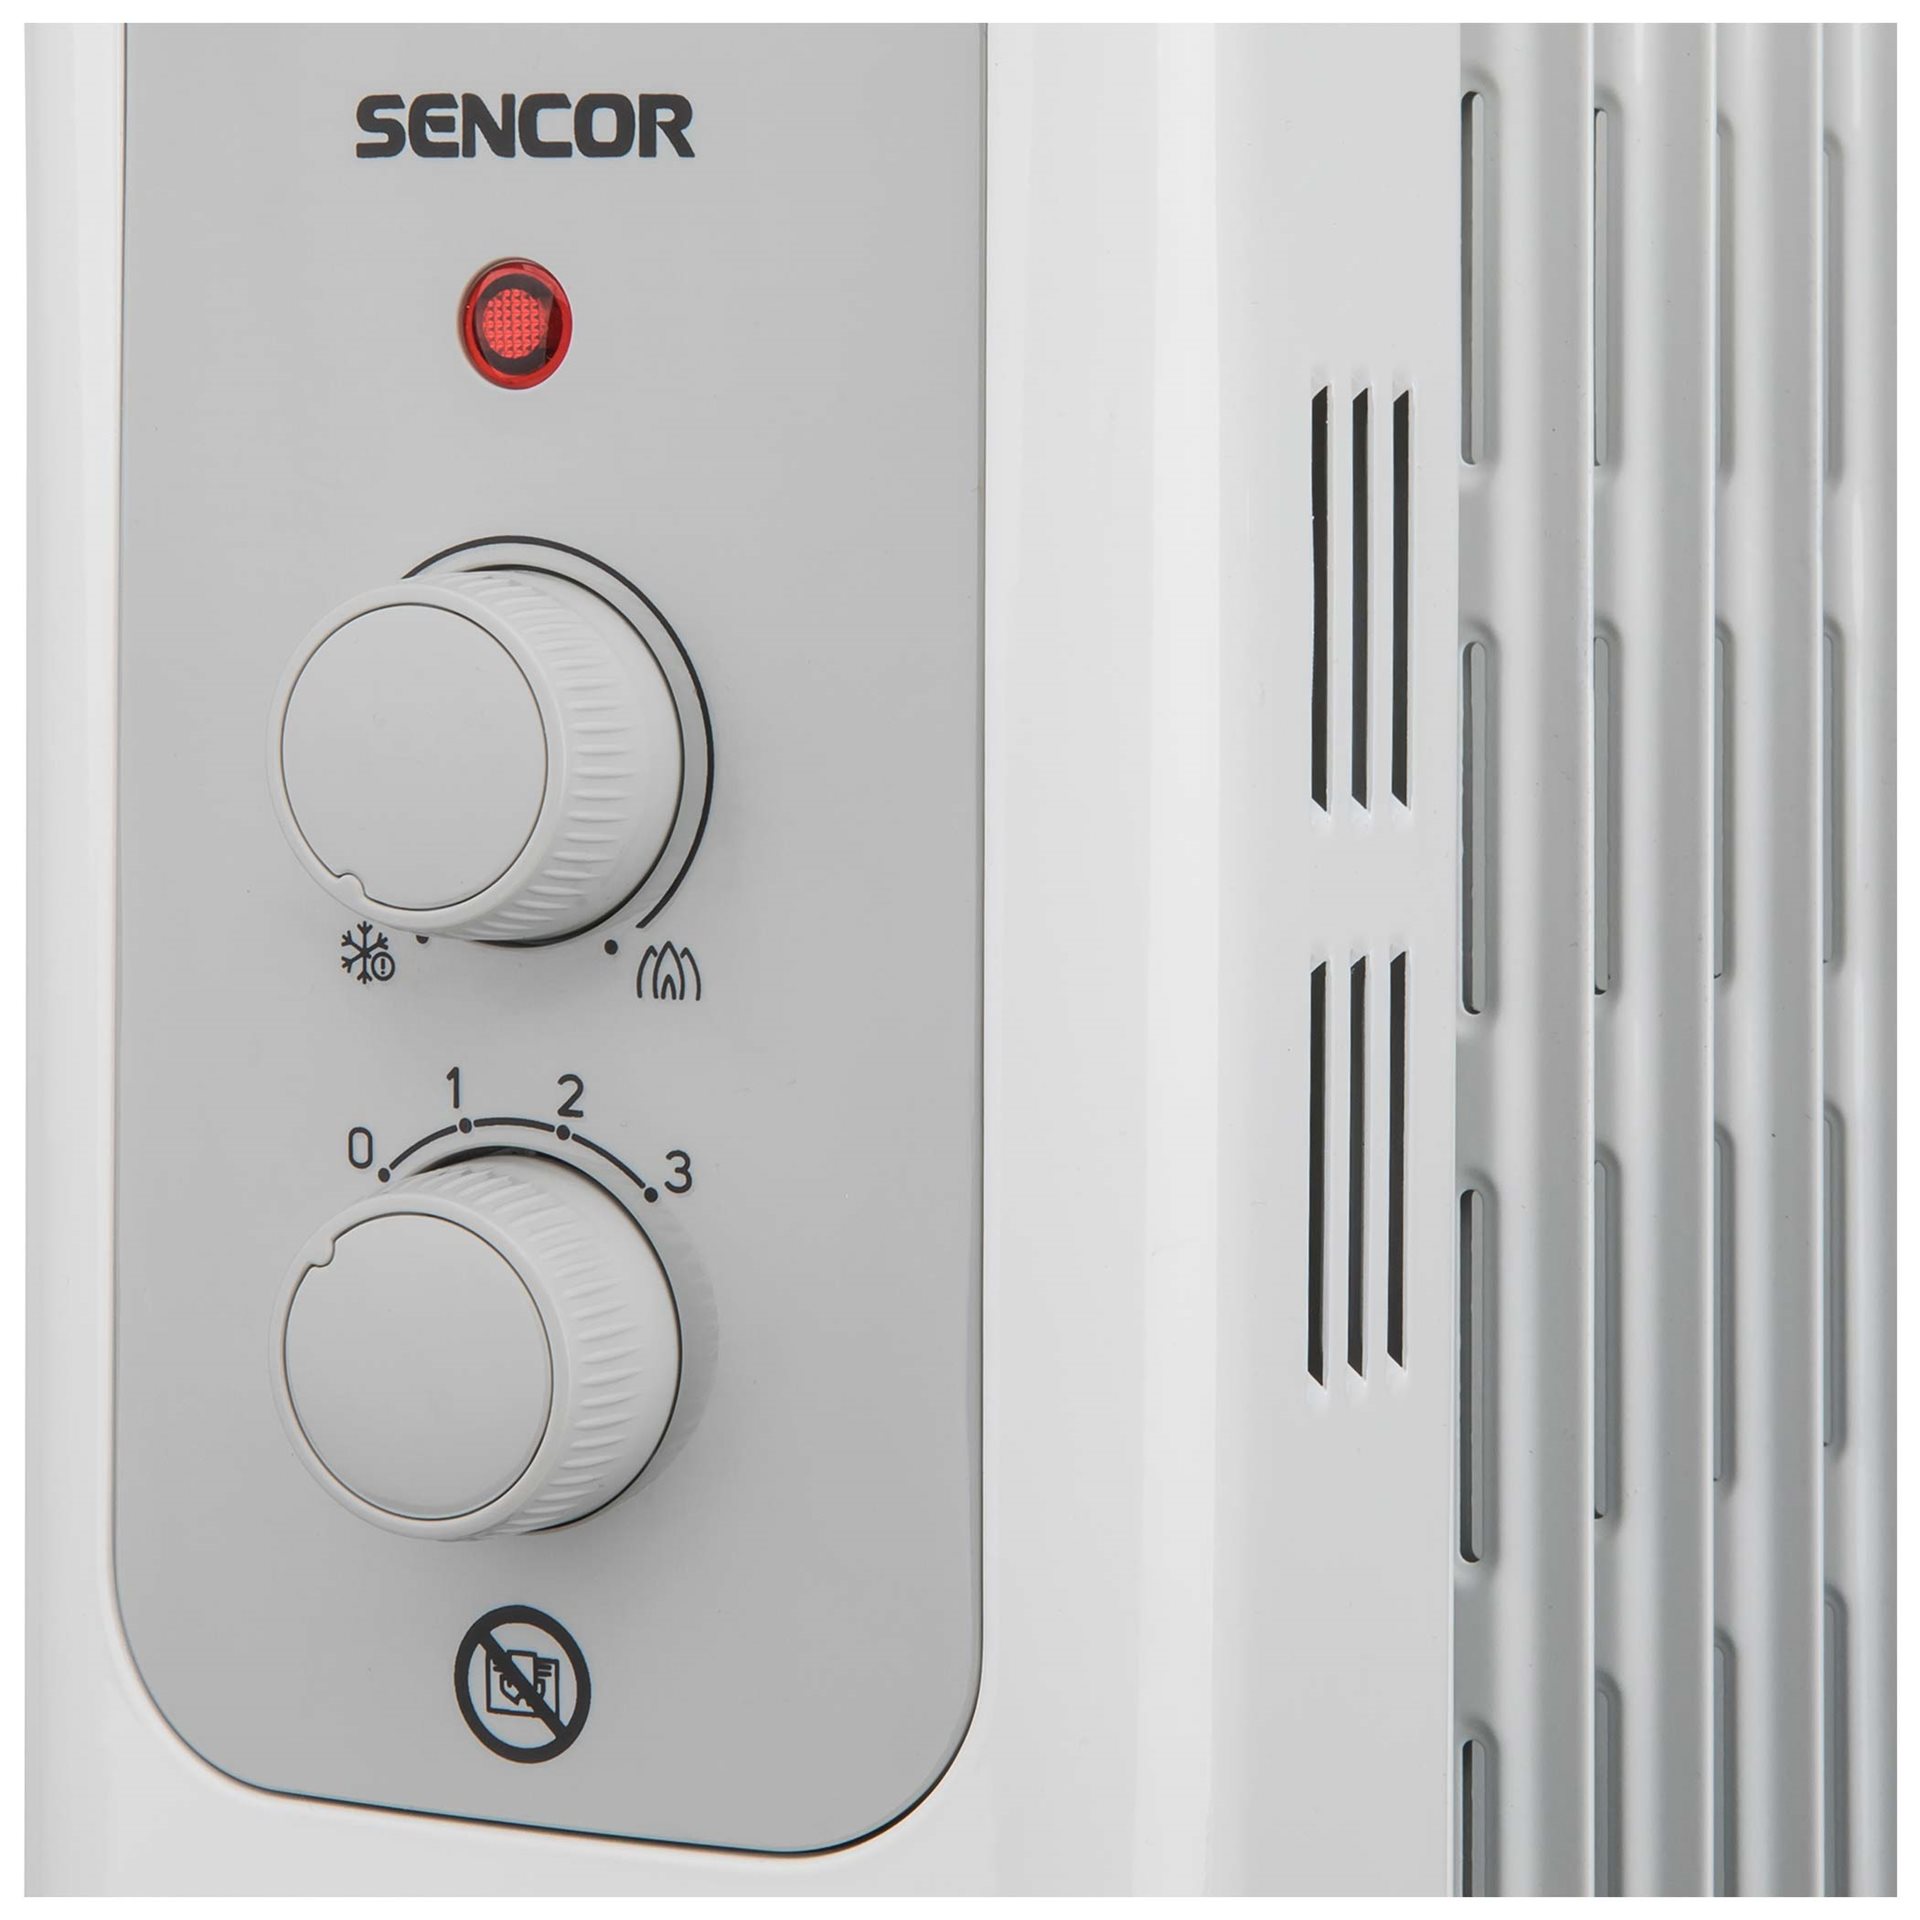 Elektrický radiátor SENCOR SOH 3309WH se ovládá 2 otočnými knoflíky